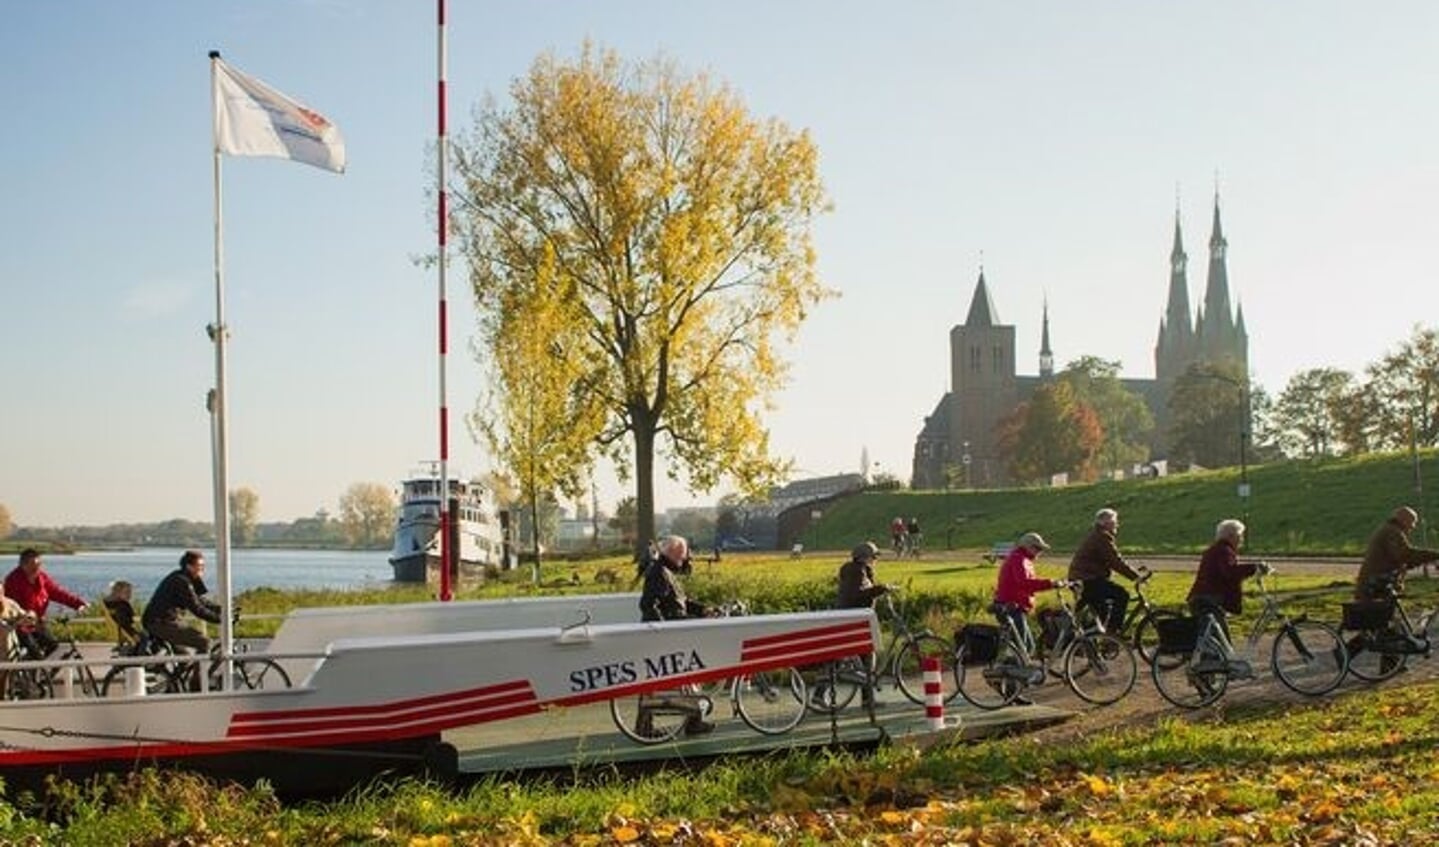 Op www.maasinhetmidden.nl staan onder meer fiets- en wandelroutes die aan twee kanten van de Maas lopen.